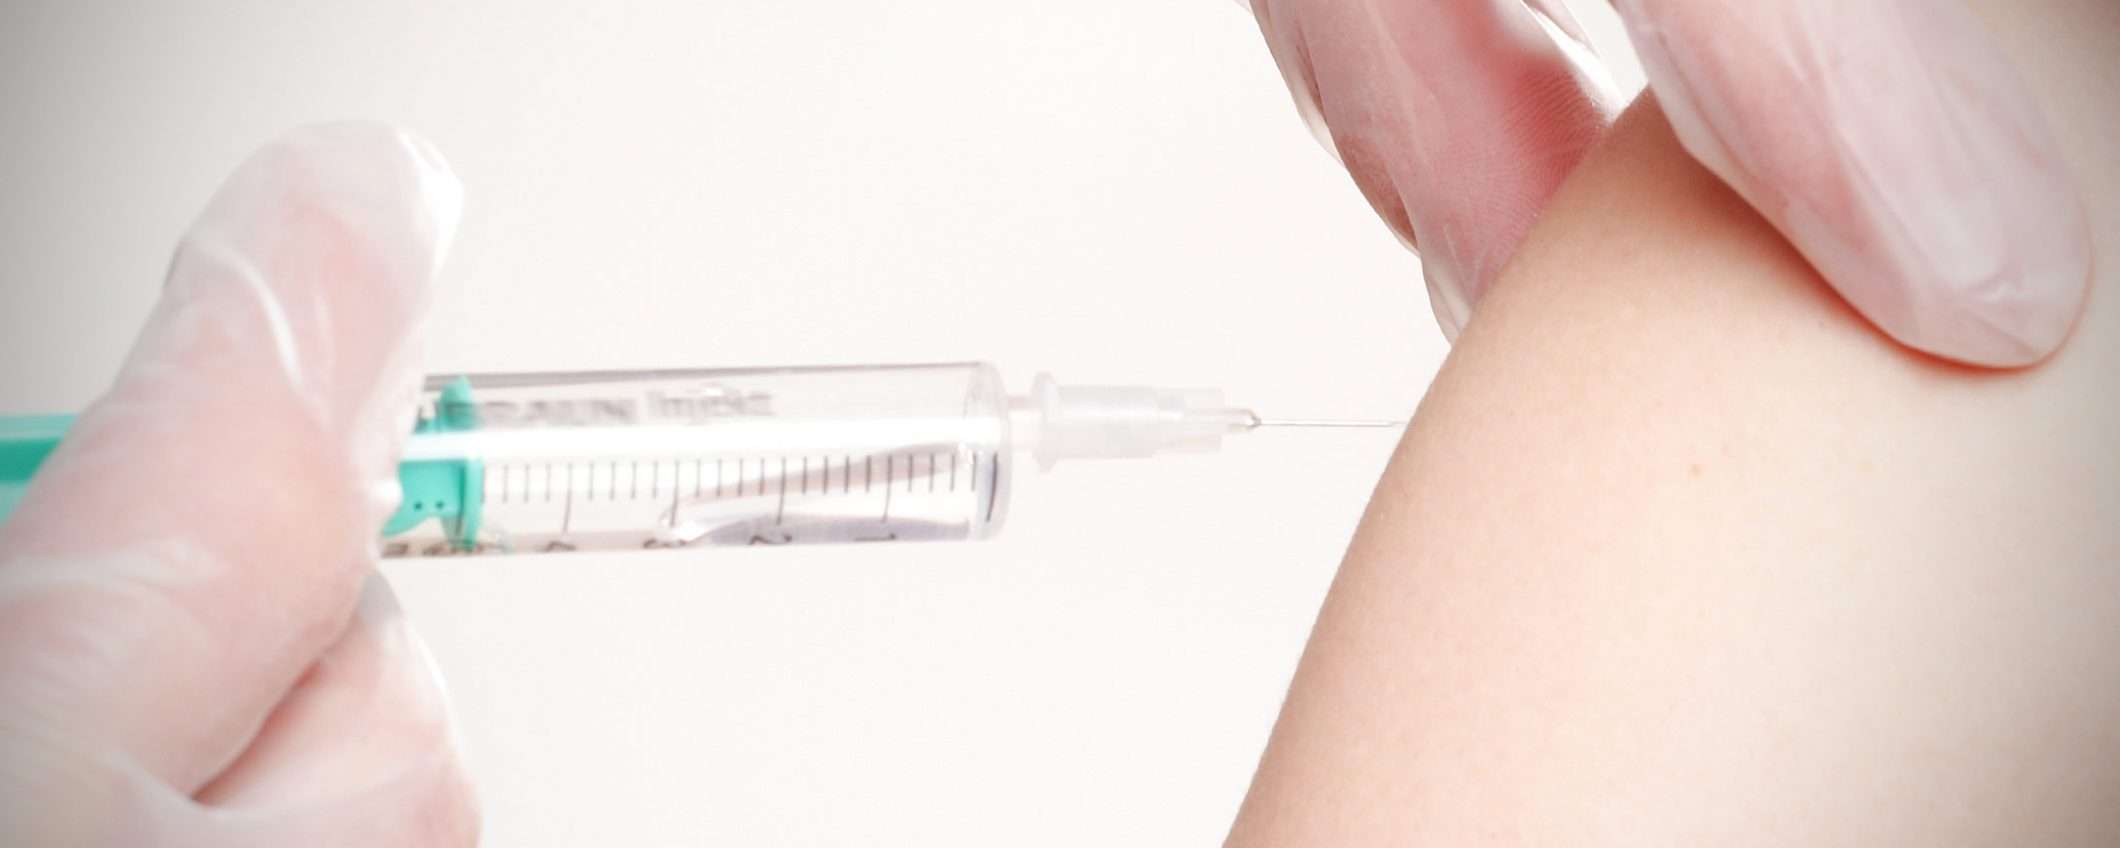 Attacco a AstraZeneca: i cracker vogliono il vaccino?